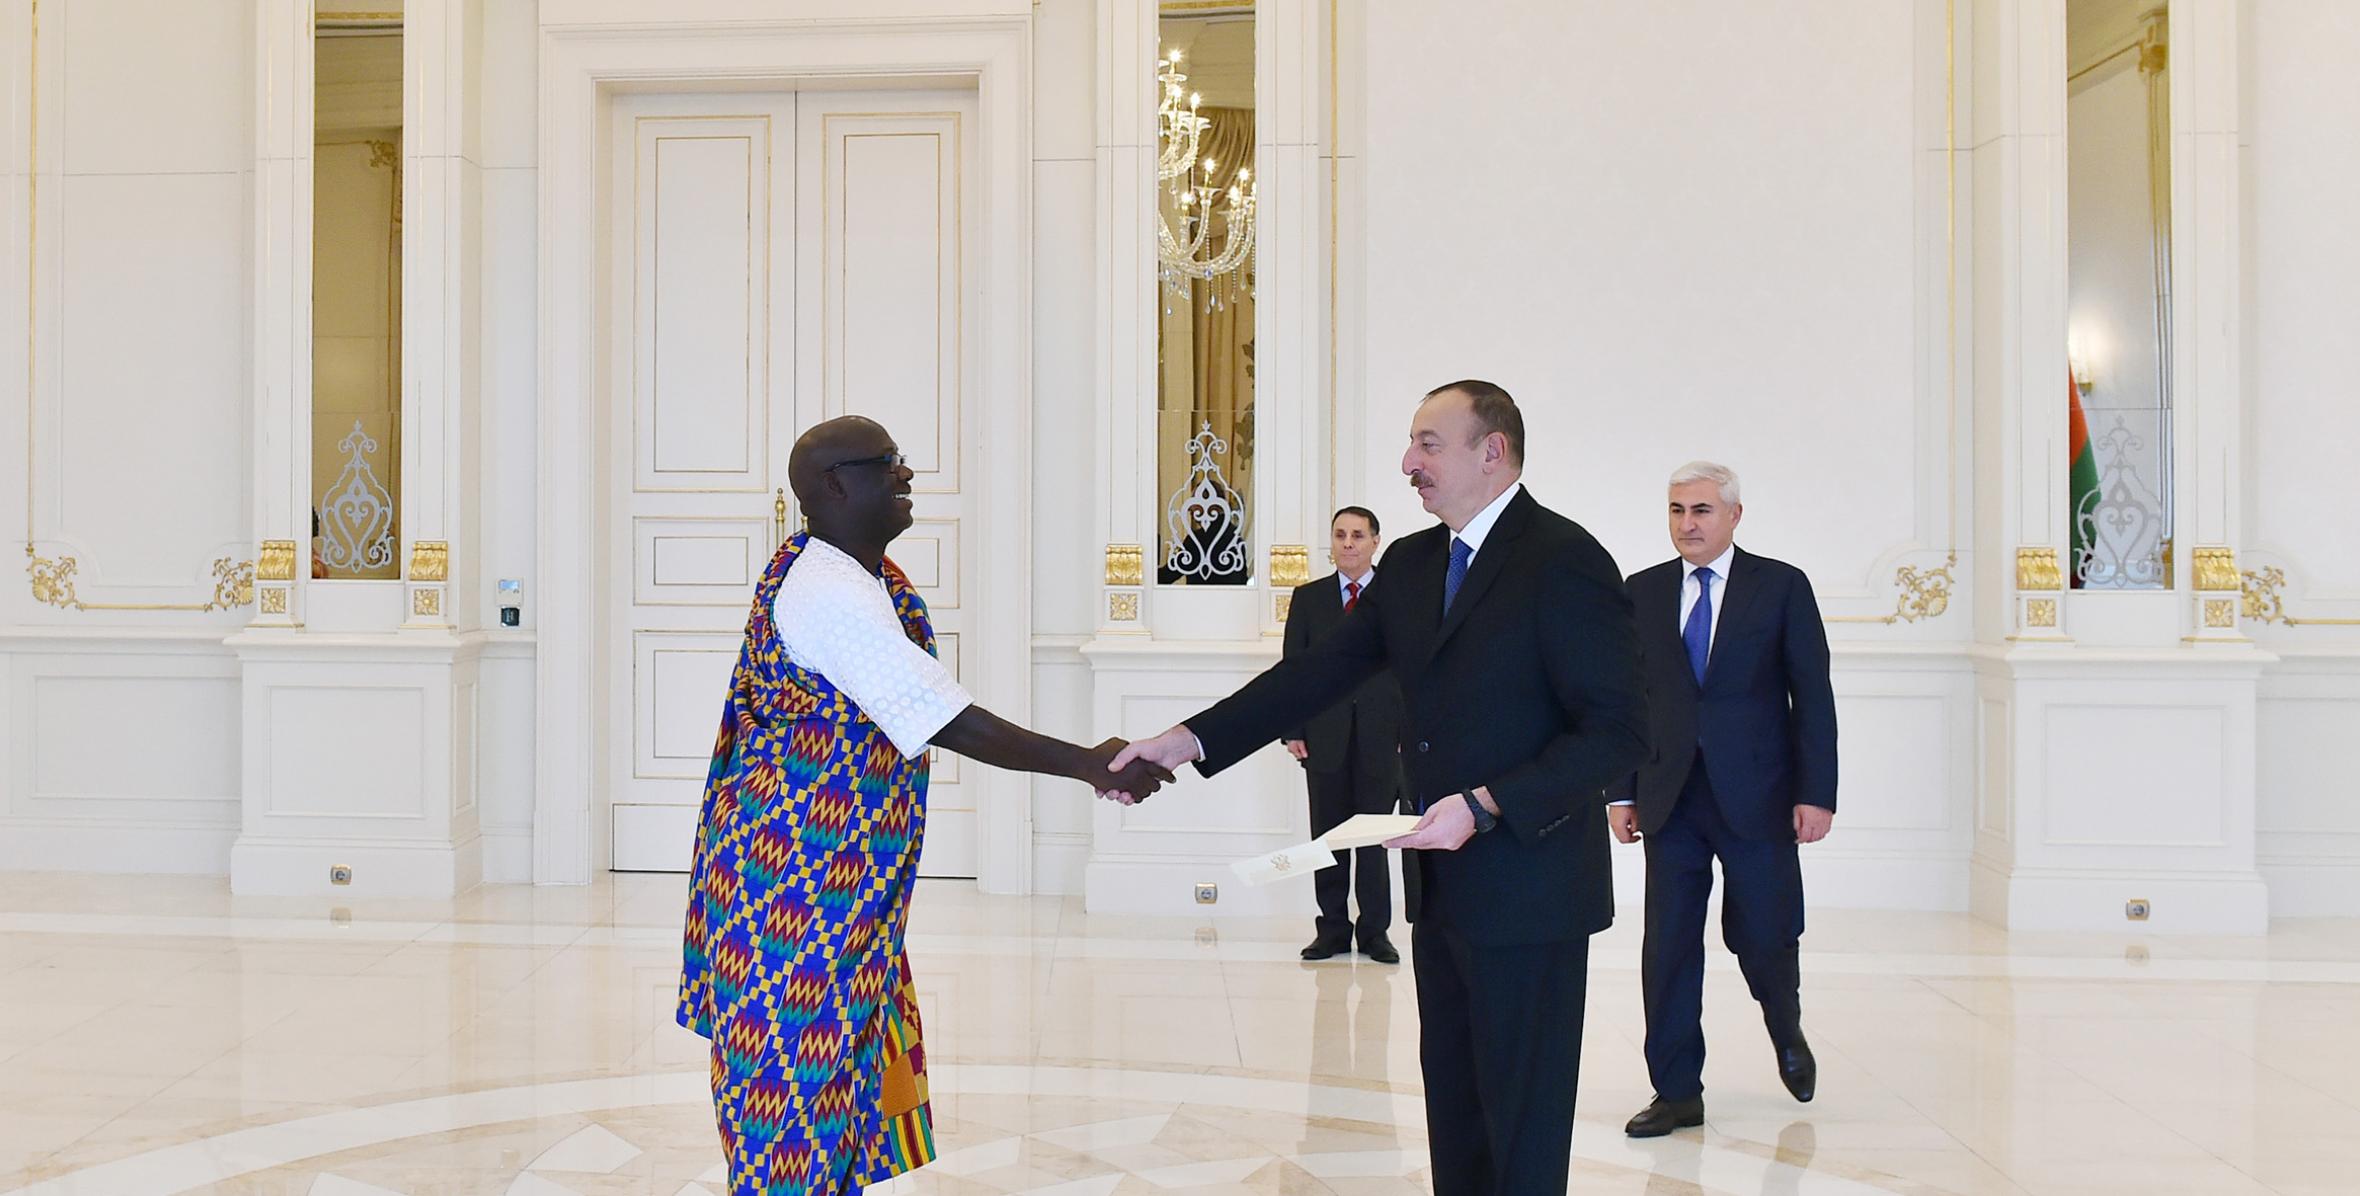 Ильхам Алиев принял верительные грамоты новоназначенного посла Ганы в Азербайджане